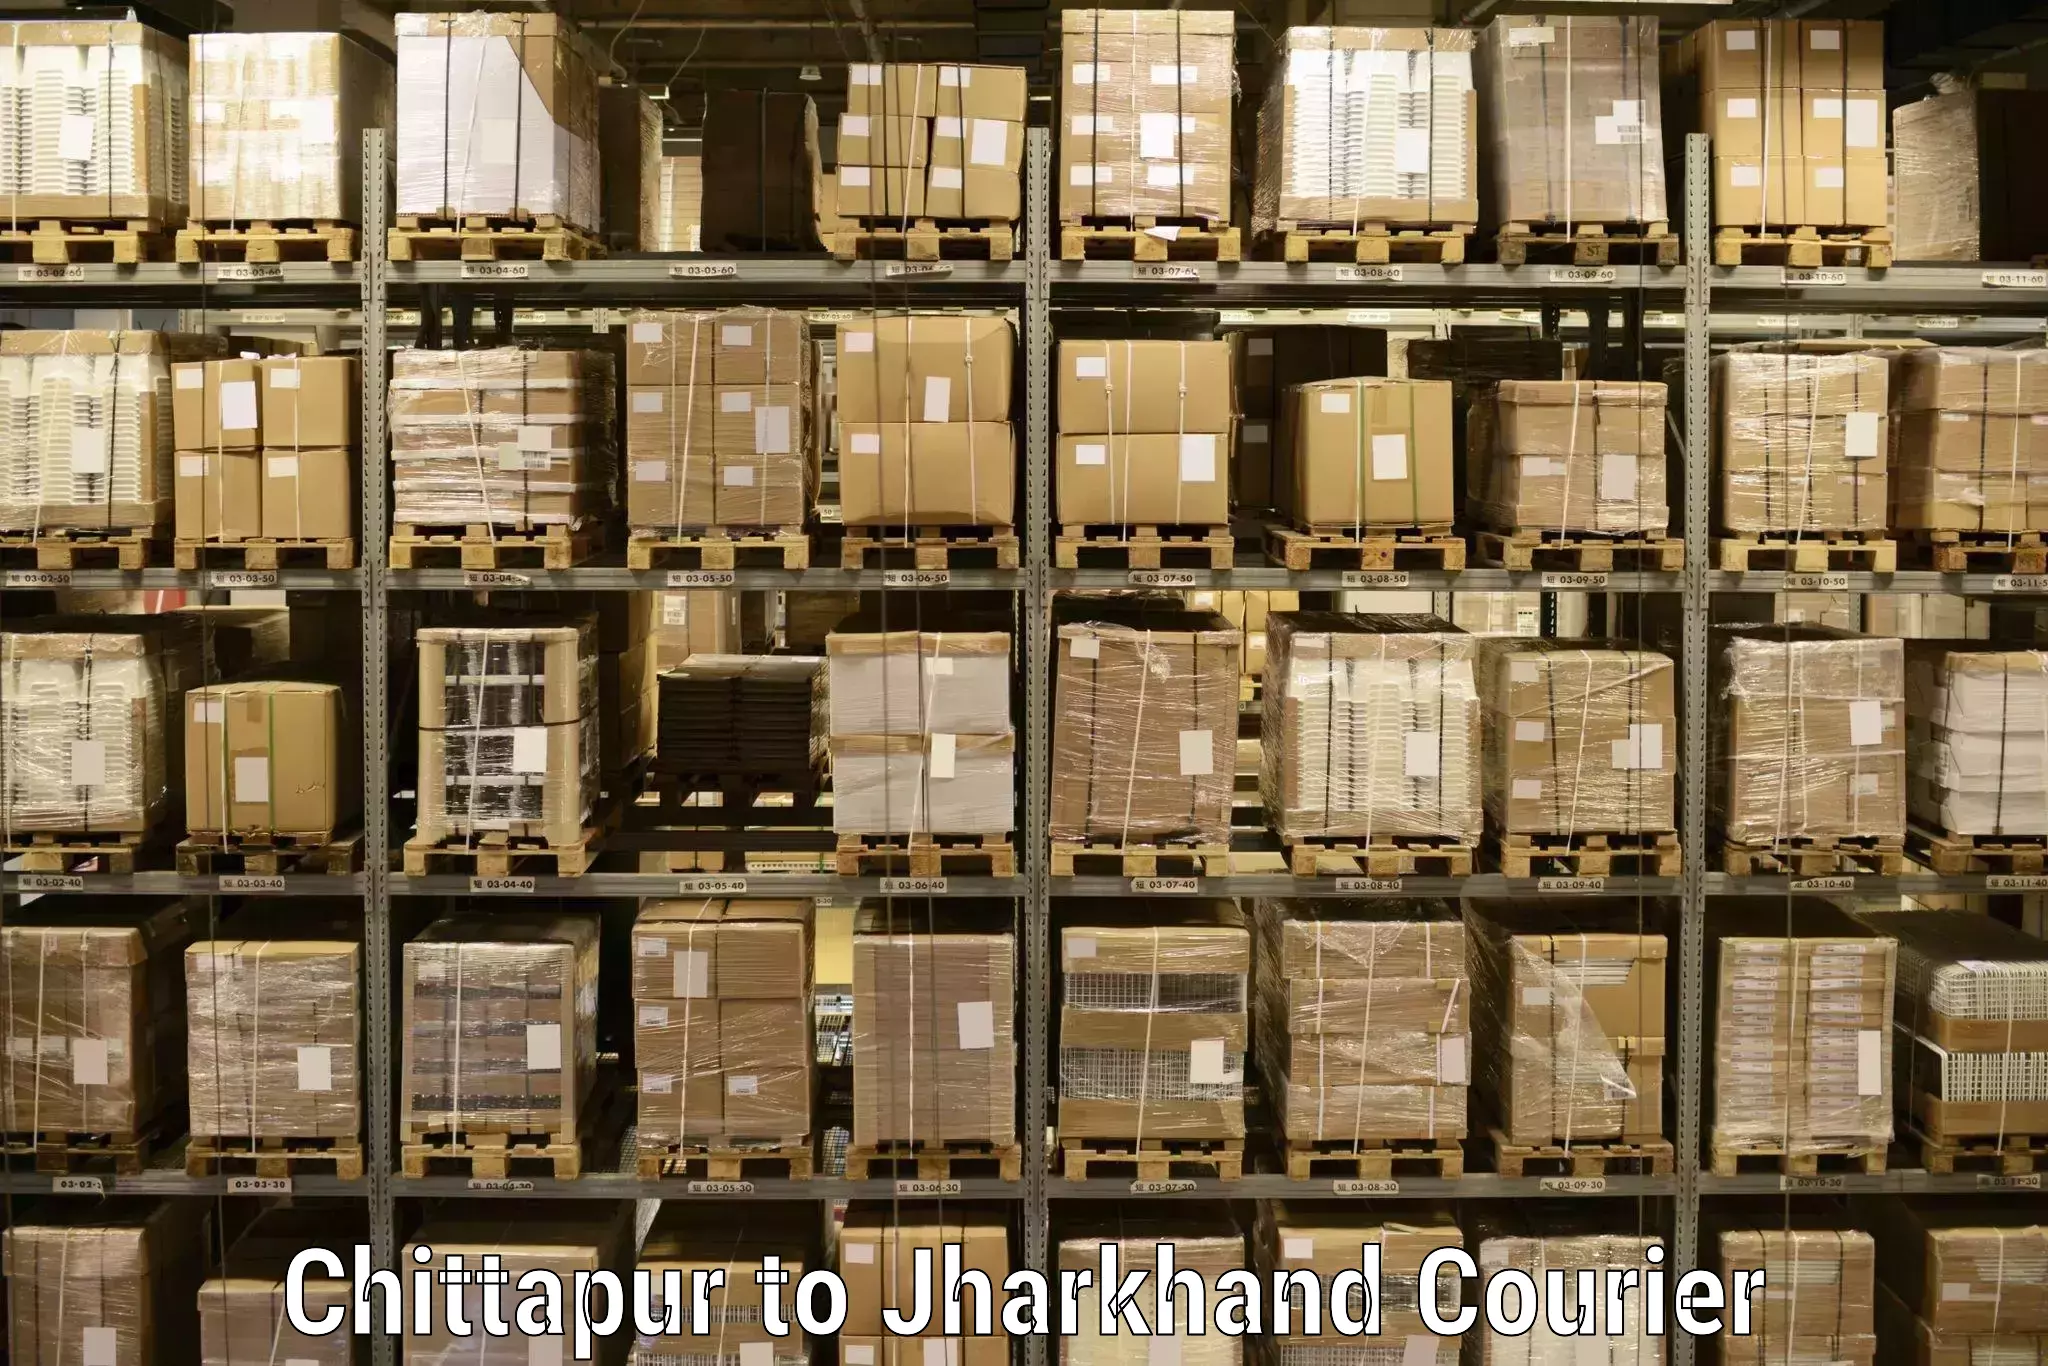 Nationwide shipping capabilities in Chittapur to Chhatarpur Palamu